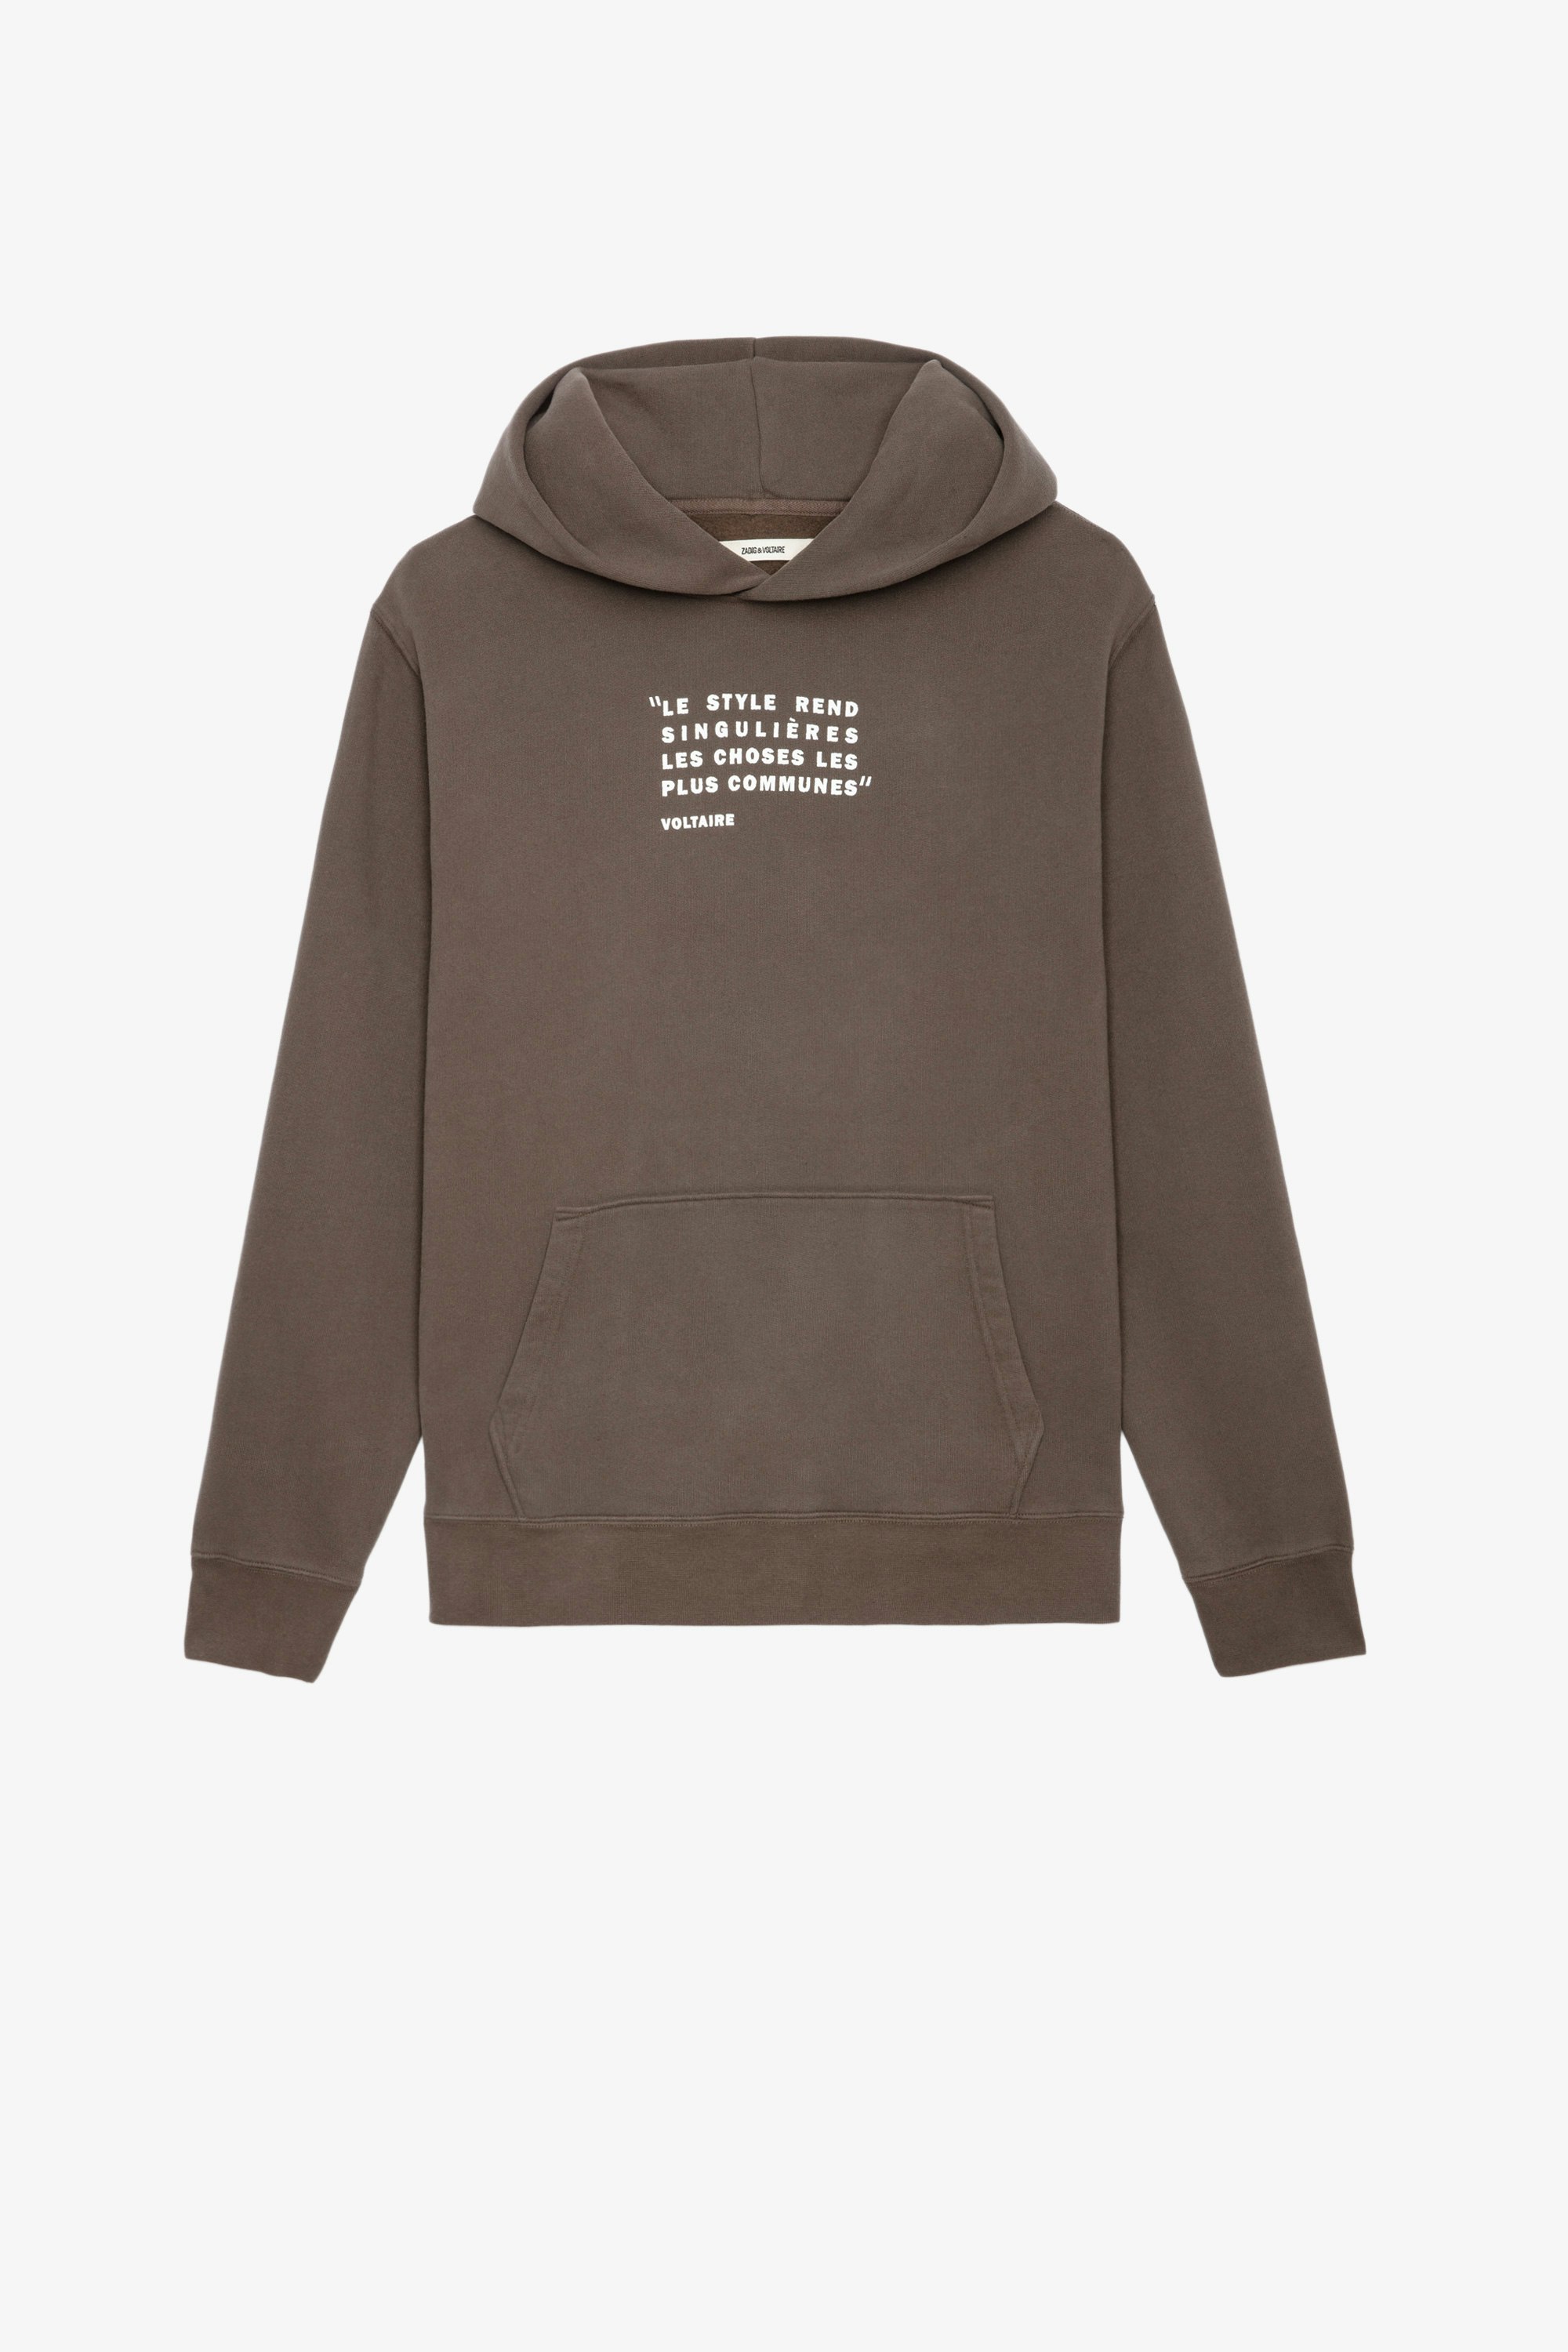 Sweatshirt Sanchi Photoprint Herren-Sweatshirt mit Kapuze aus bronzefarbener Baumwolle mit Textaufdruck und Fotoprint auf der Rückseite